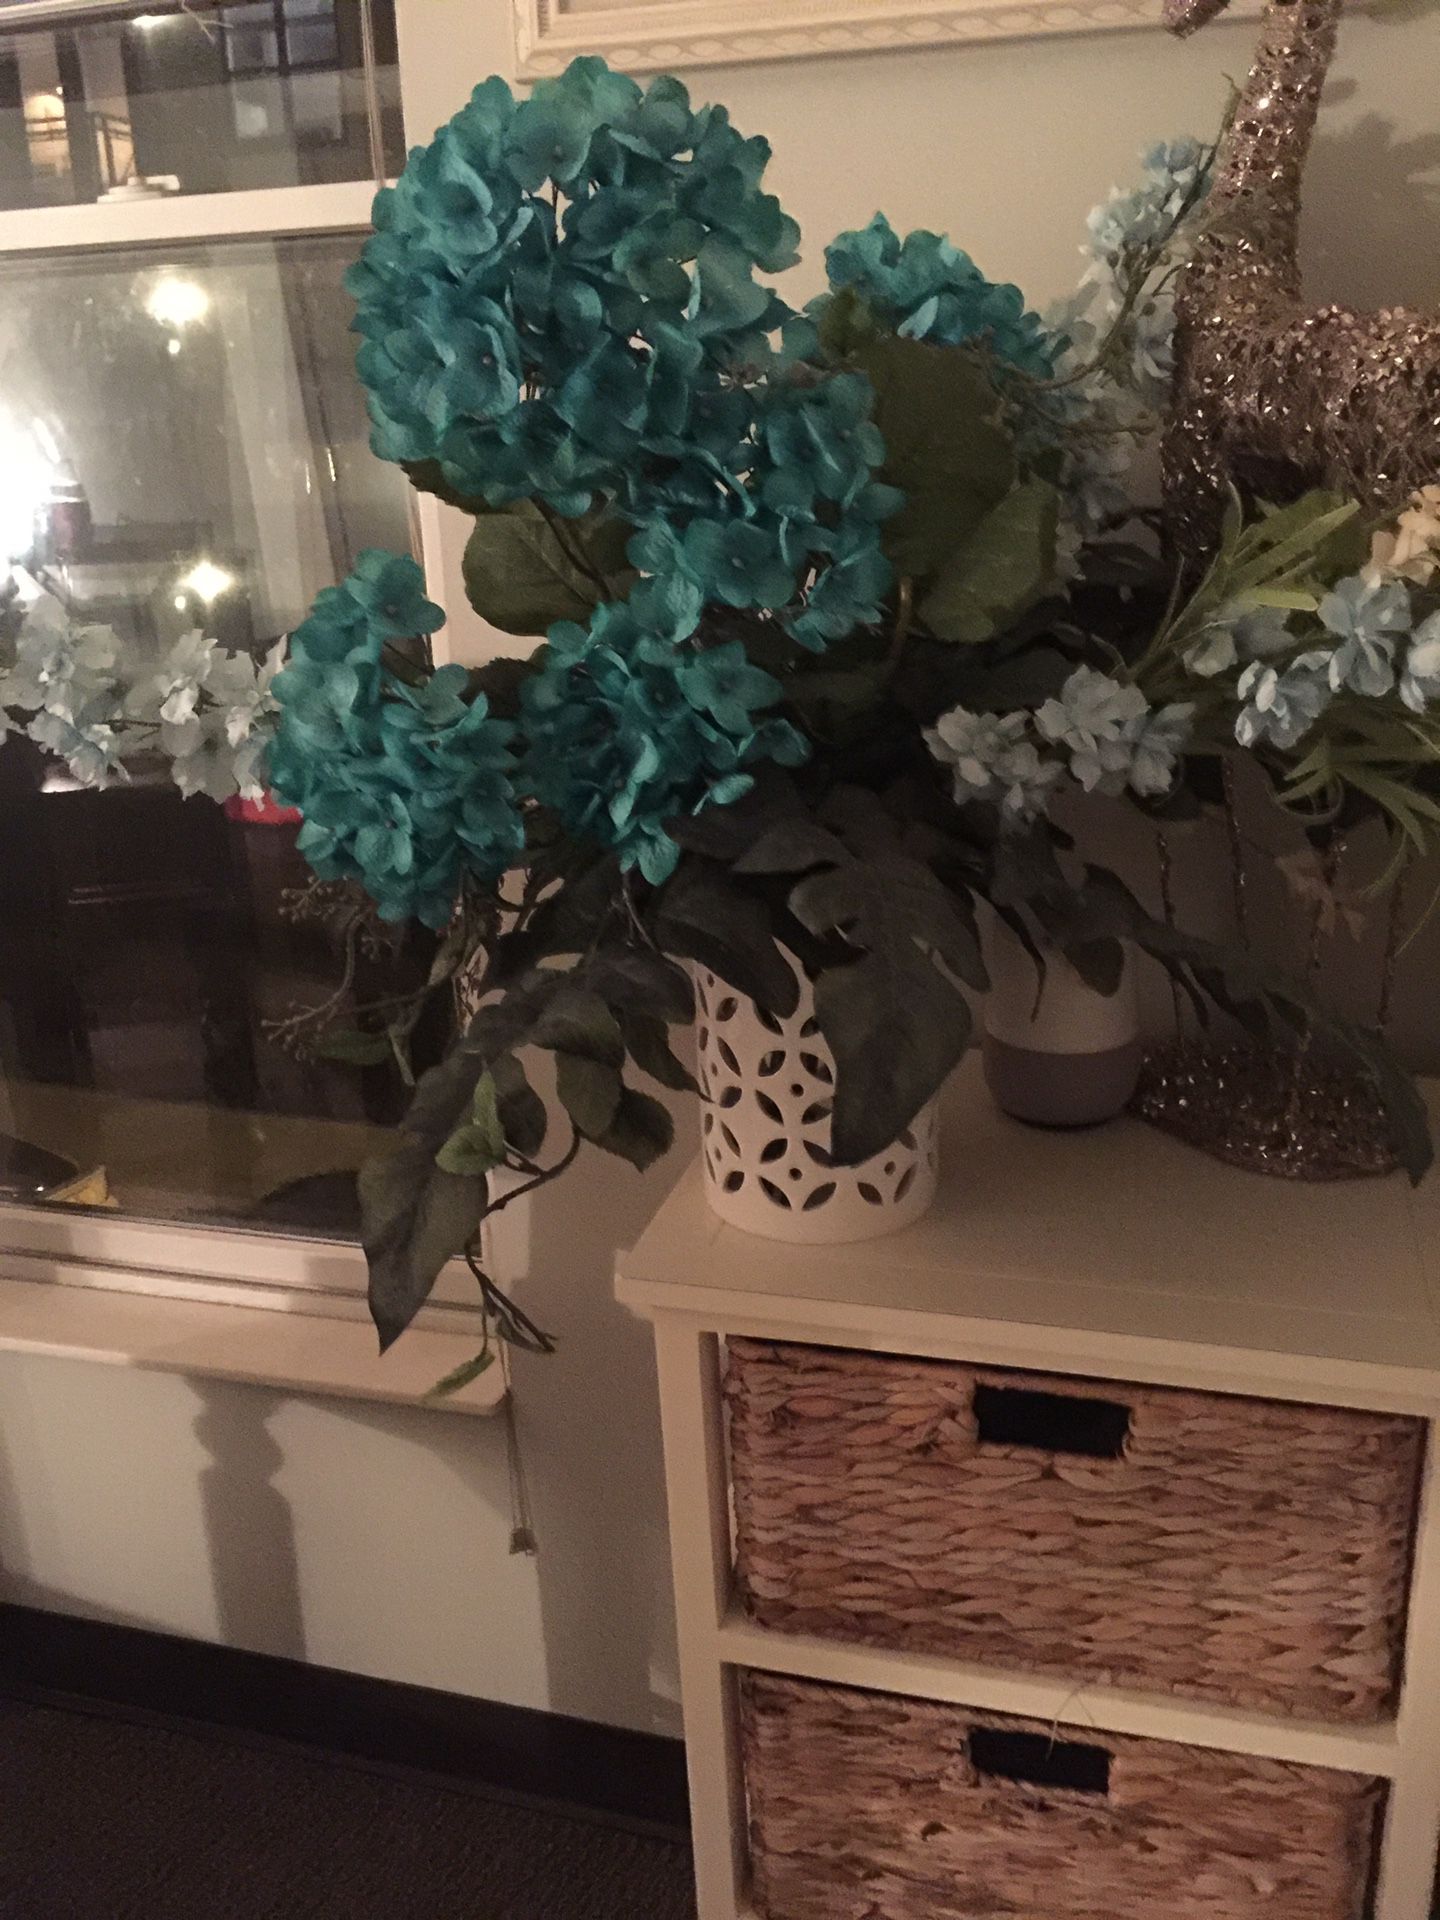 Flower arrangement with vase-centerpiece